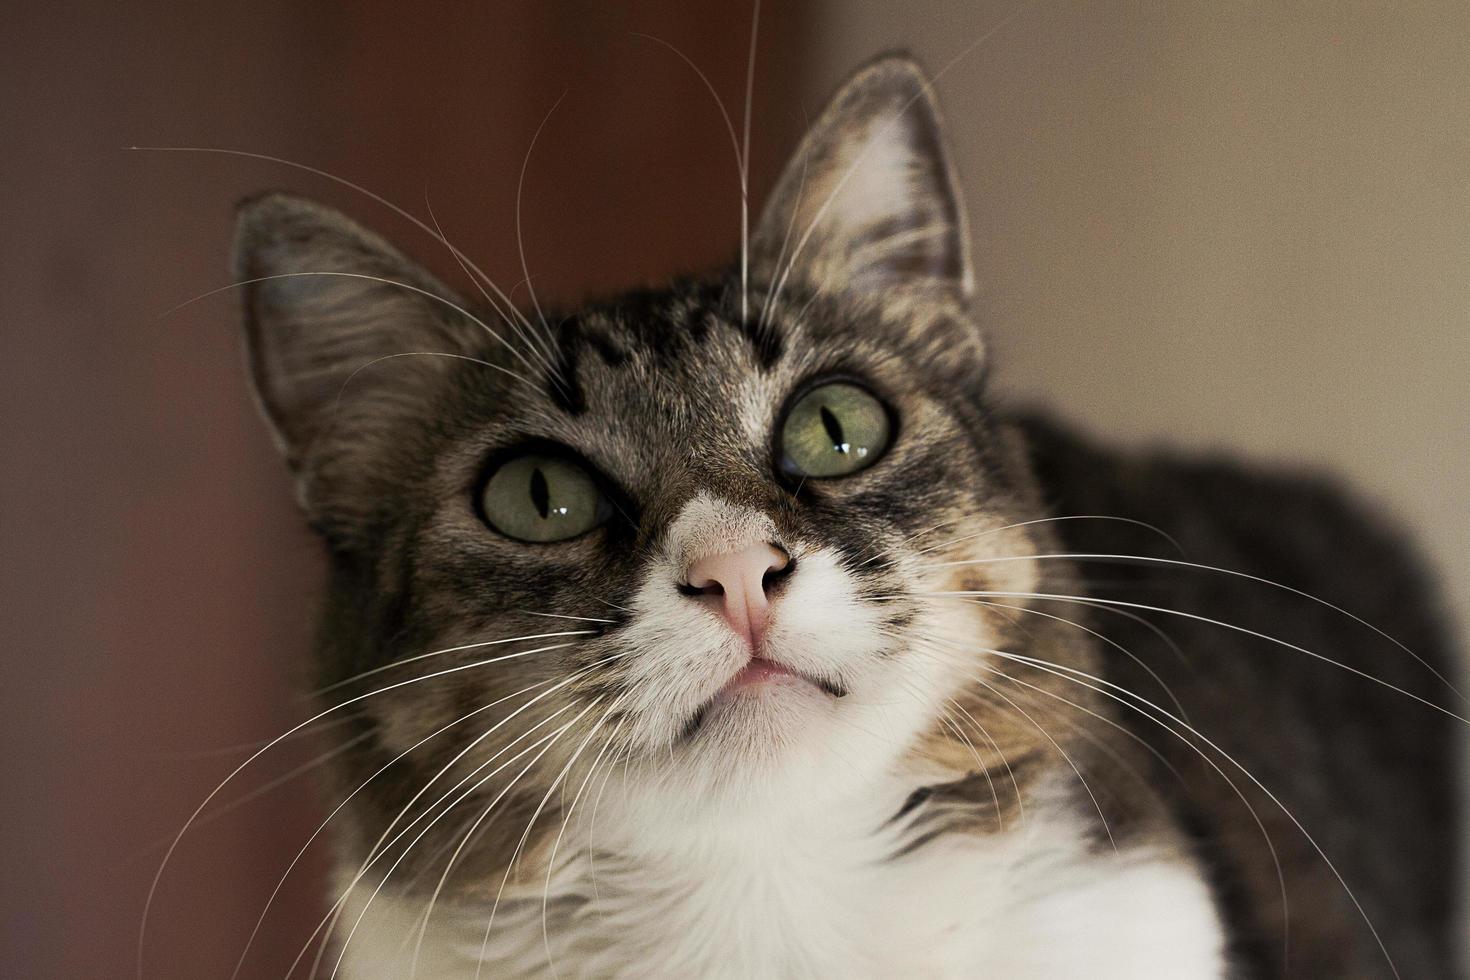 retrato de um lindo gatinho fofo de olhos verdes foto